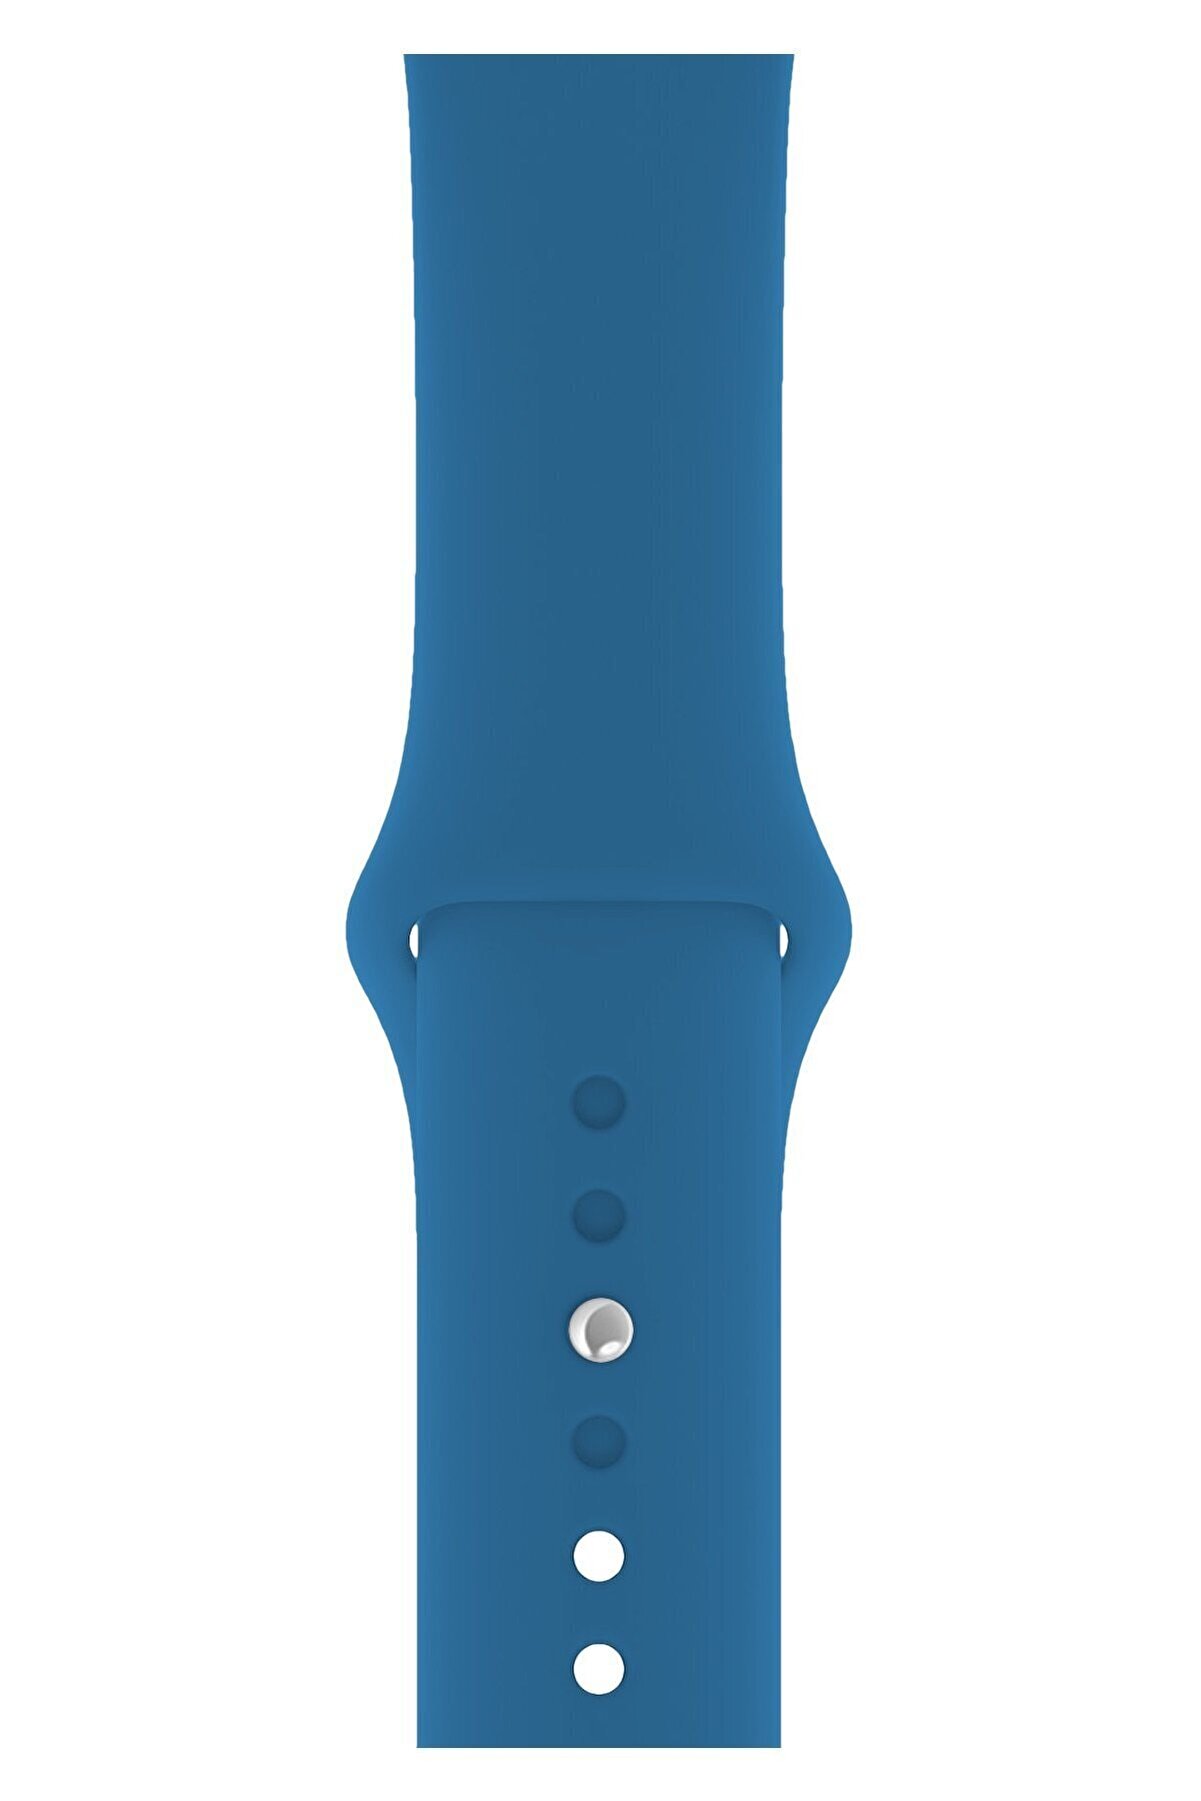 Apple Watch 2 3 4 5 6 Se Nike 38mm 40mm Uyumlu Kordon Kayış Bileklik Klasik Kaliteli Spor Silikon Band